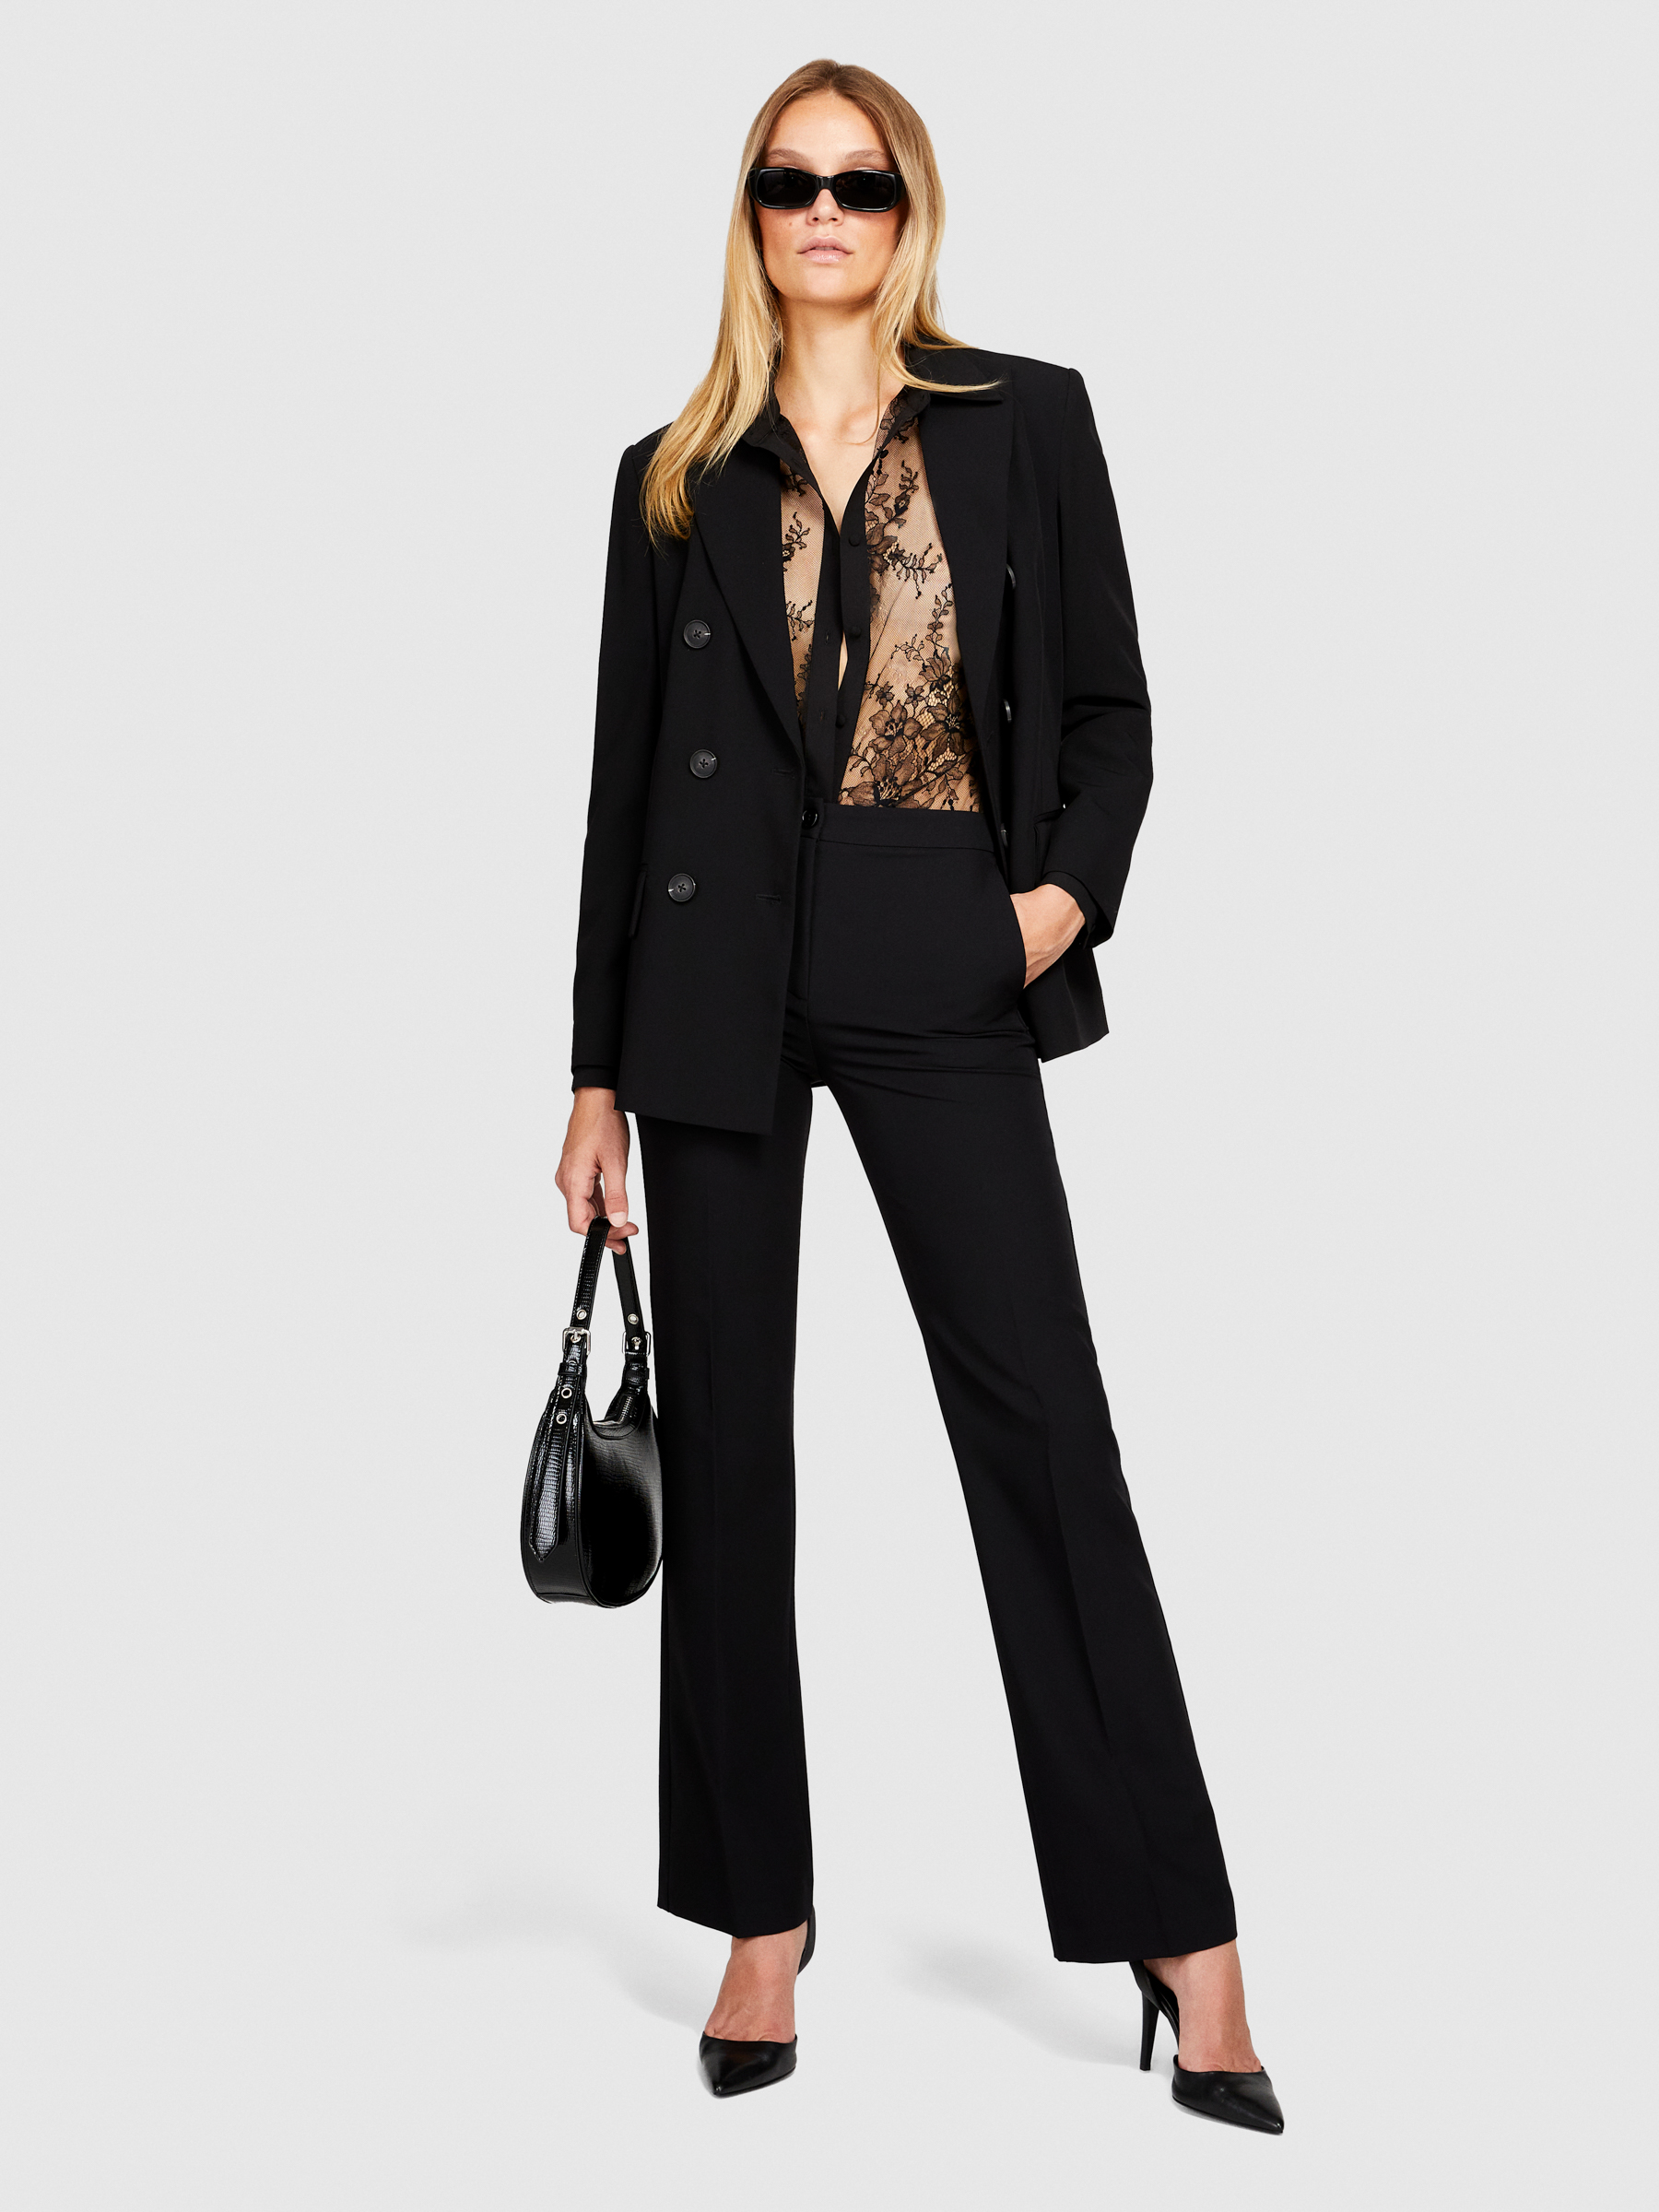 Sisley - Lace Shirt, Woman, Black, Size: M